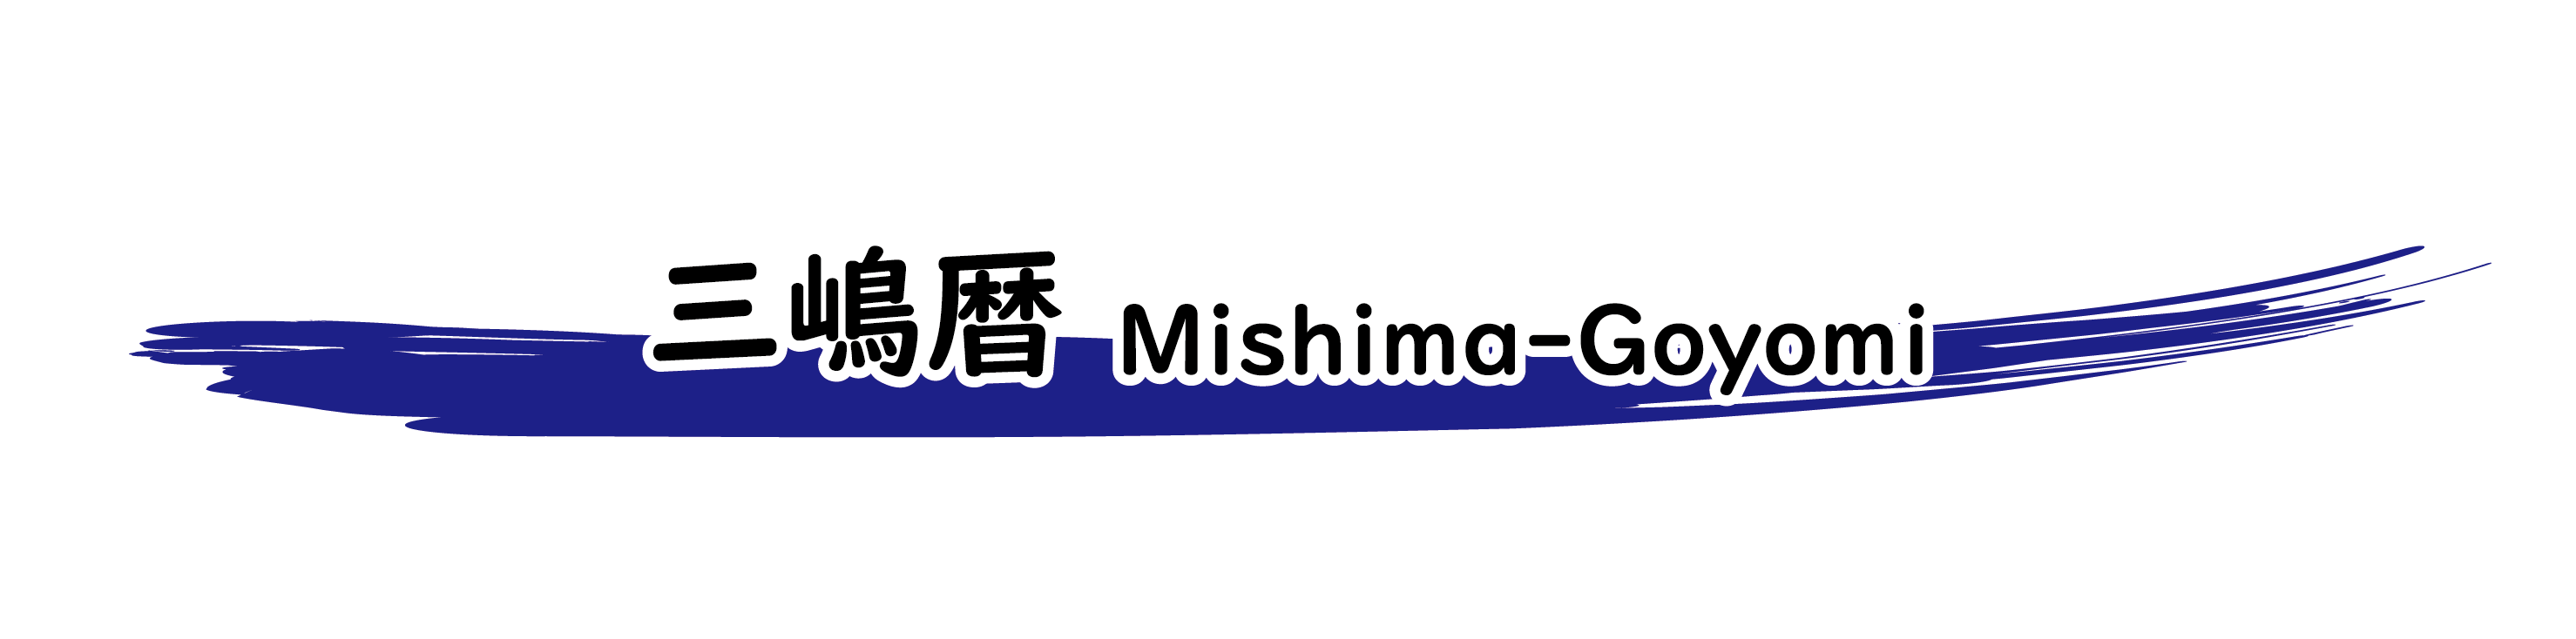 三嶋暦 Mishima-Goyomi